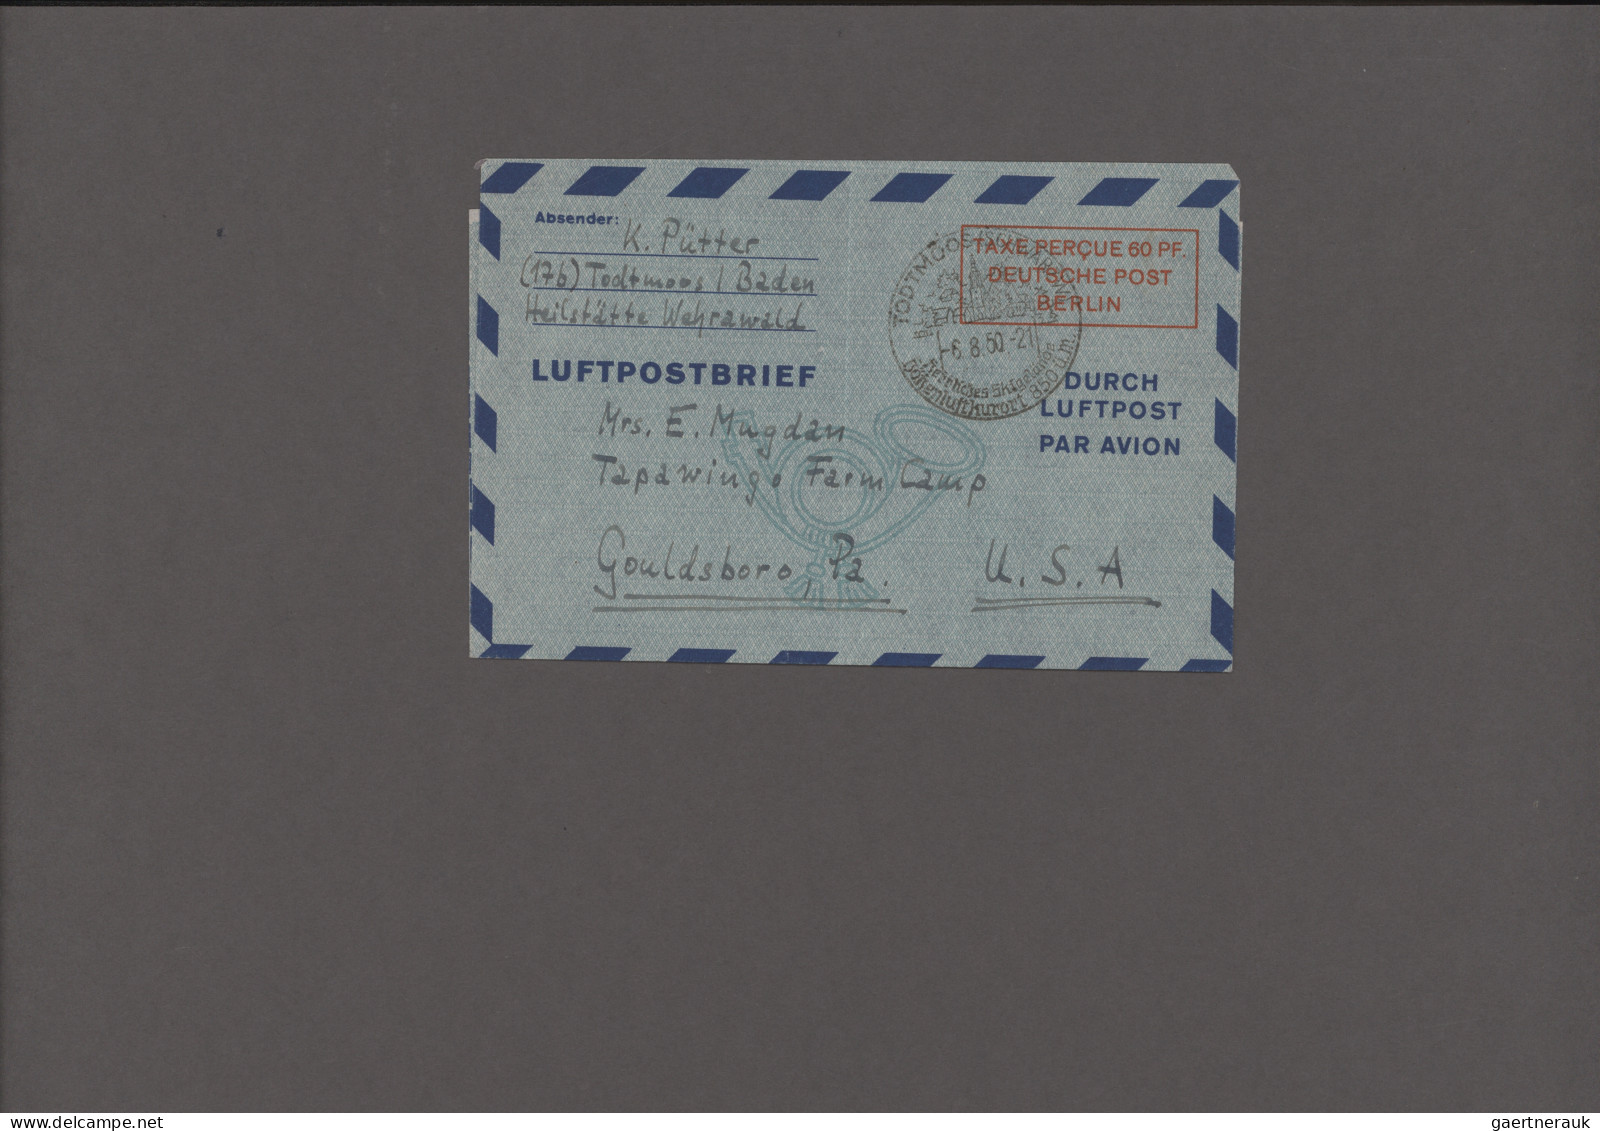 Berlin - Ganzsachen: 1948/1954, Luftpostfaltbriefe, Sammlung von 14 ungebrauchte